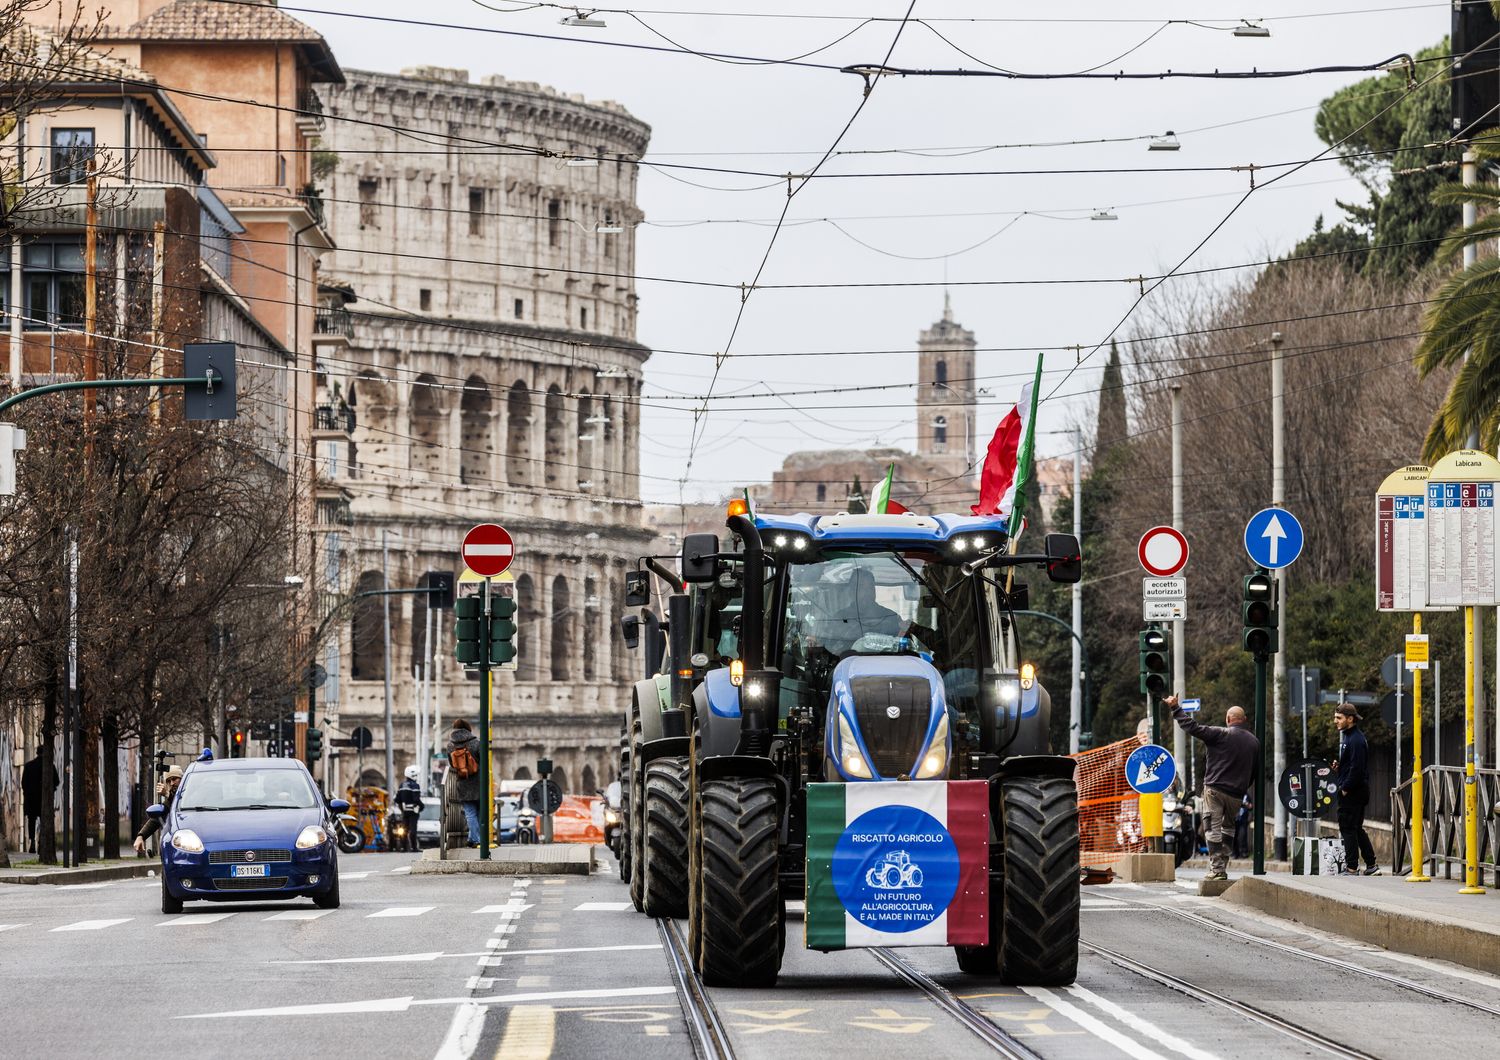 La protesta degli agricoltori a Roma